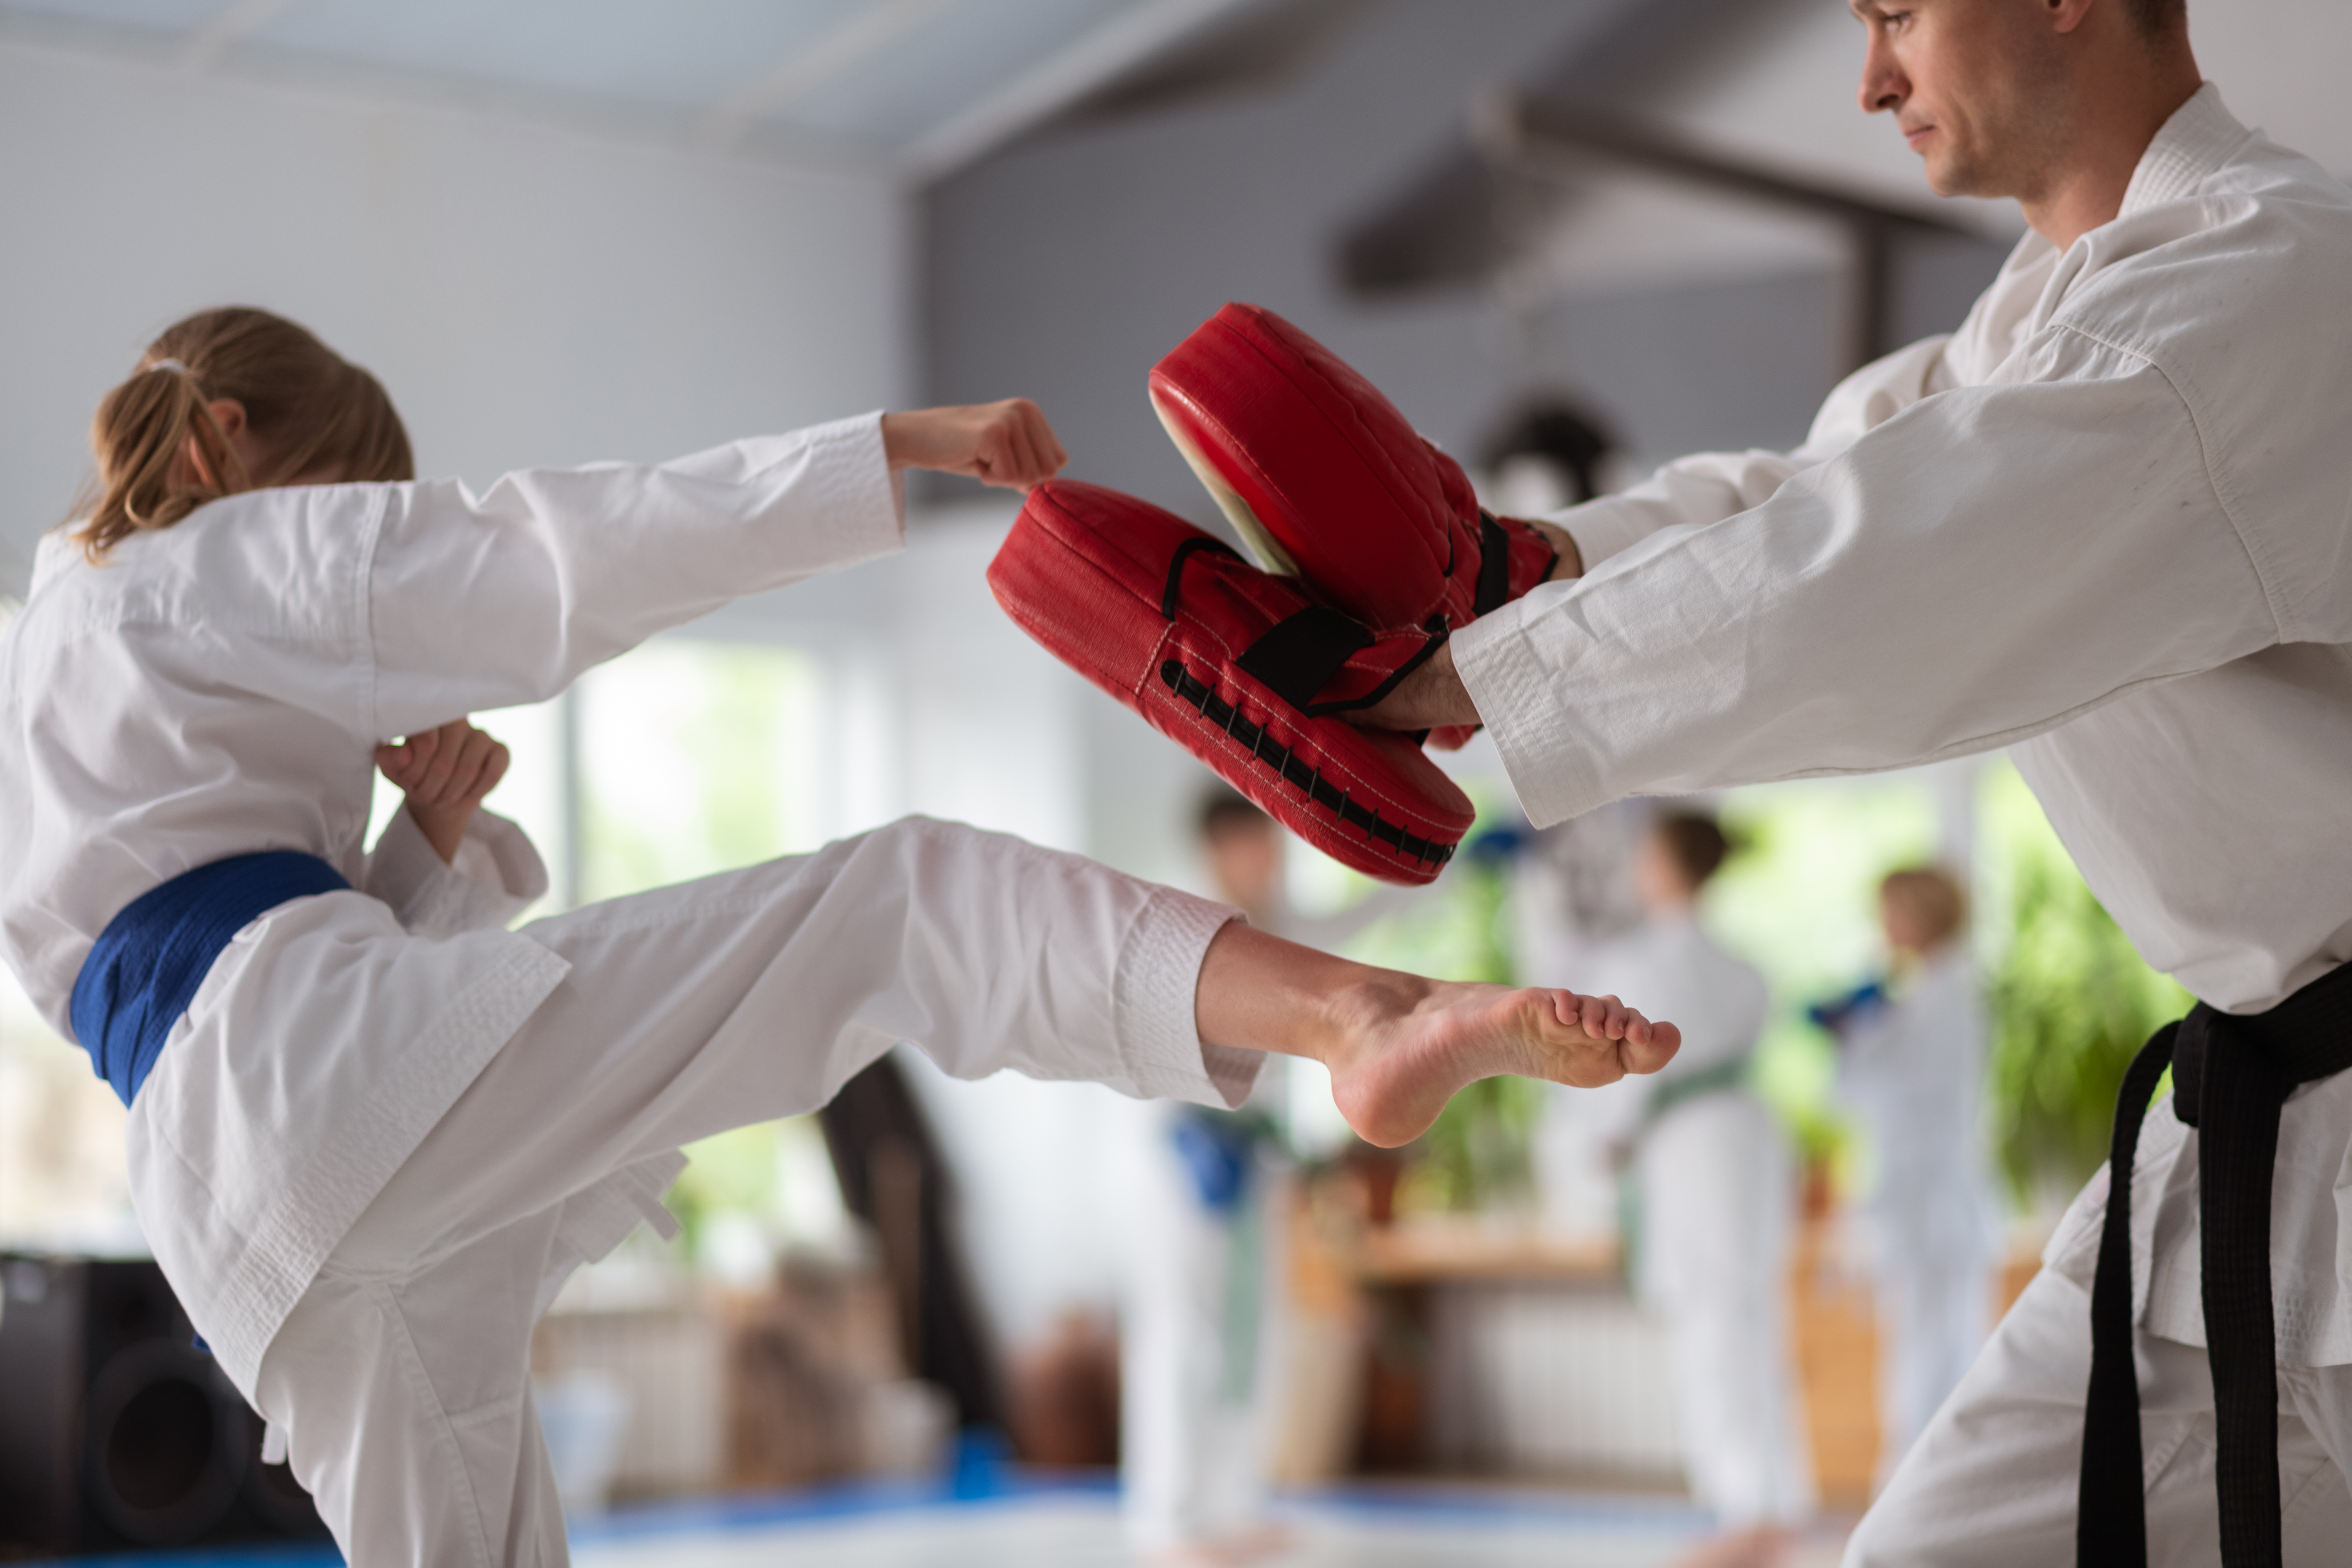 martial arts kicking